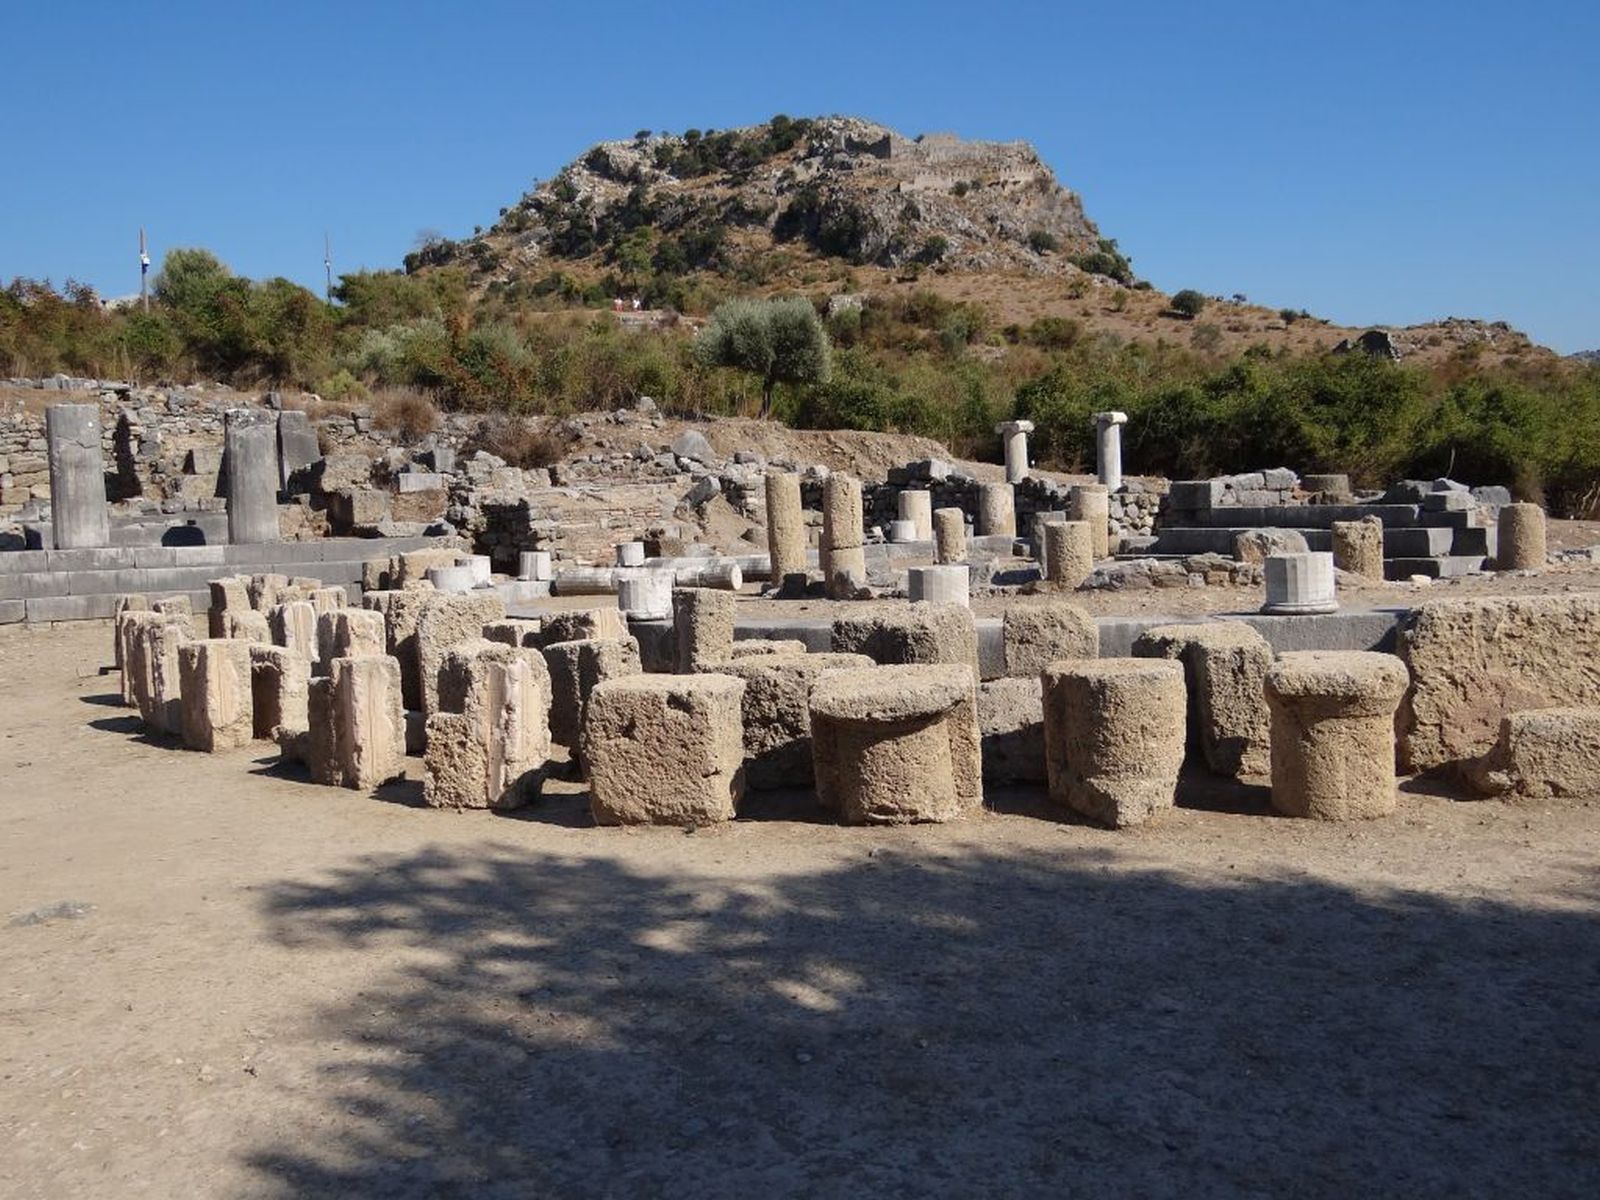 020 - Kounos - Sito archeologico